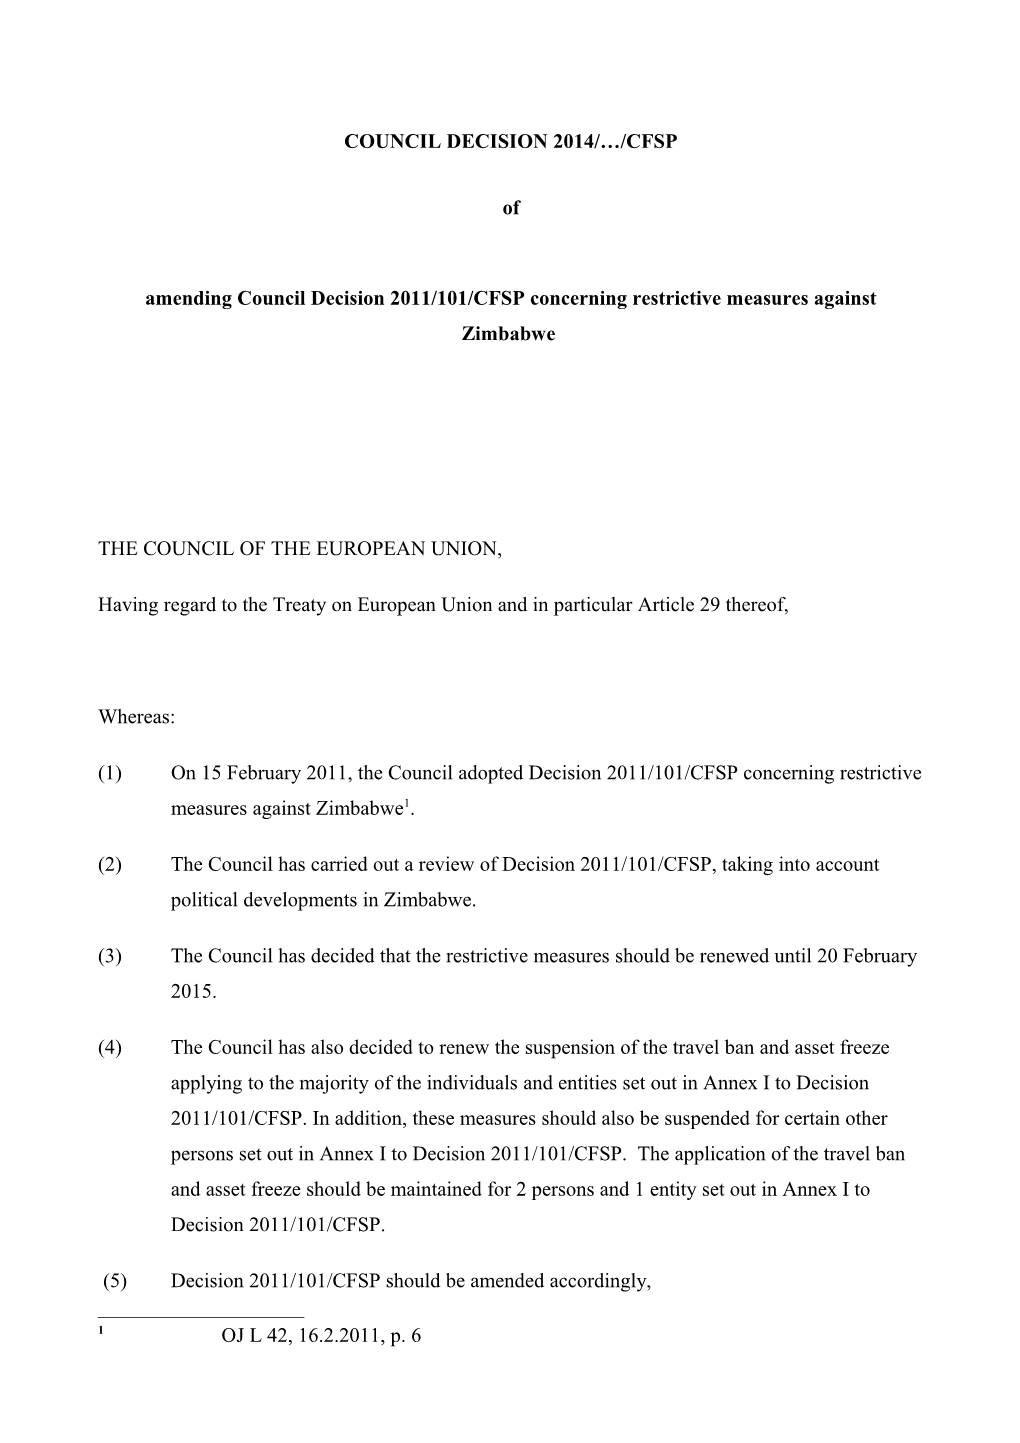 Amending Council Decision 2011/101/CFSP Concerning Restrictive Measures Against Zimbabwe